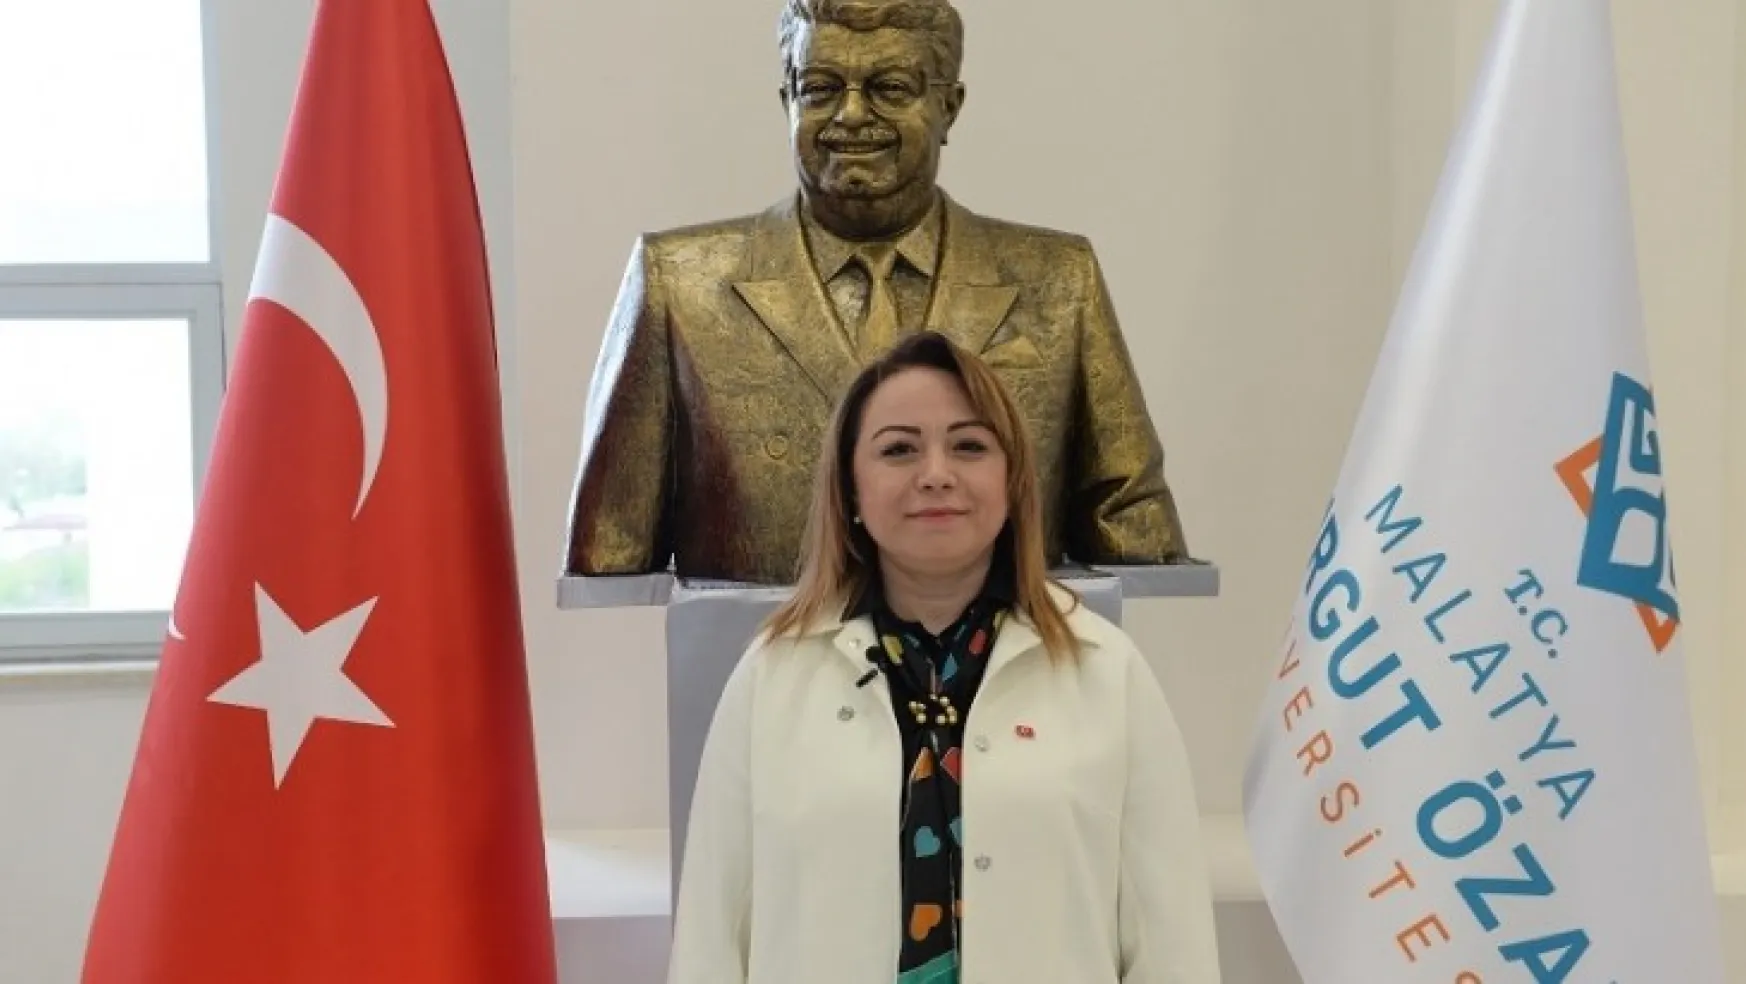 Malatya Turgut Özal Üniversitesi Rektörü Karabulut'tan Özal'ı anma mesajı